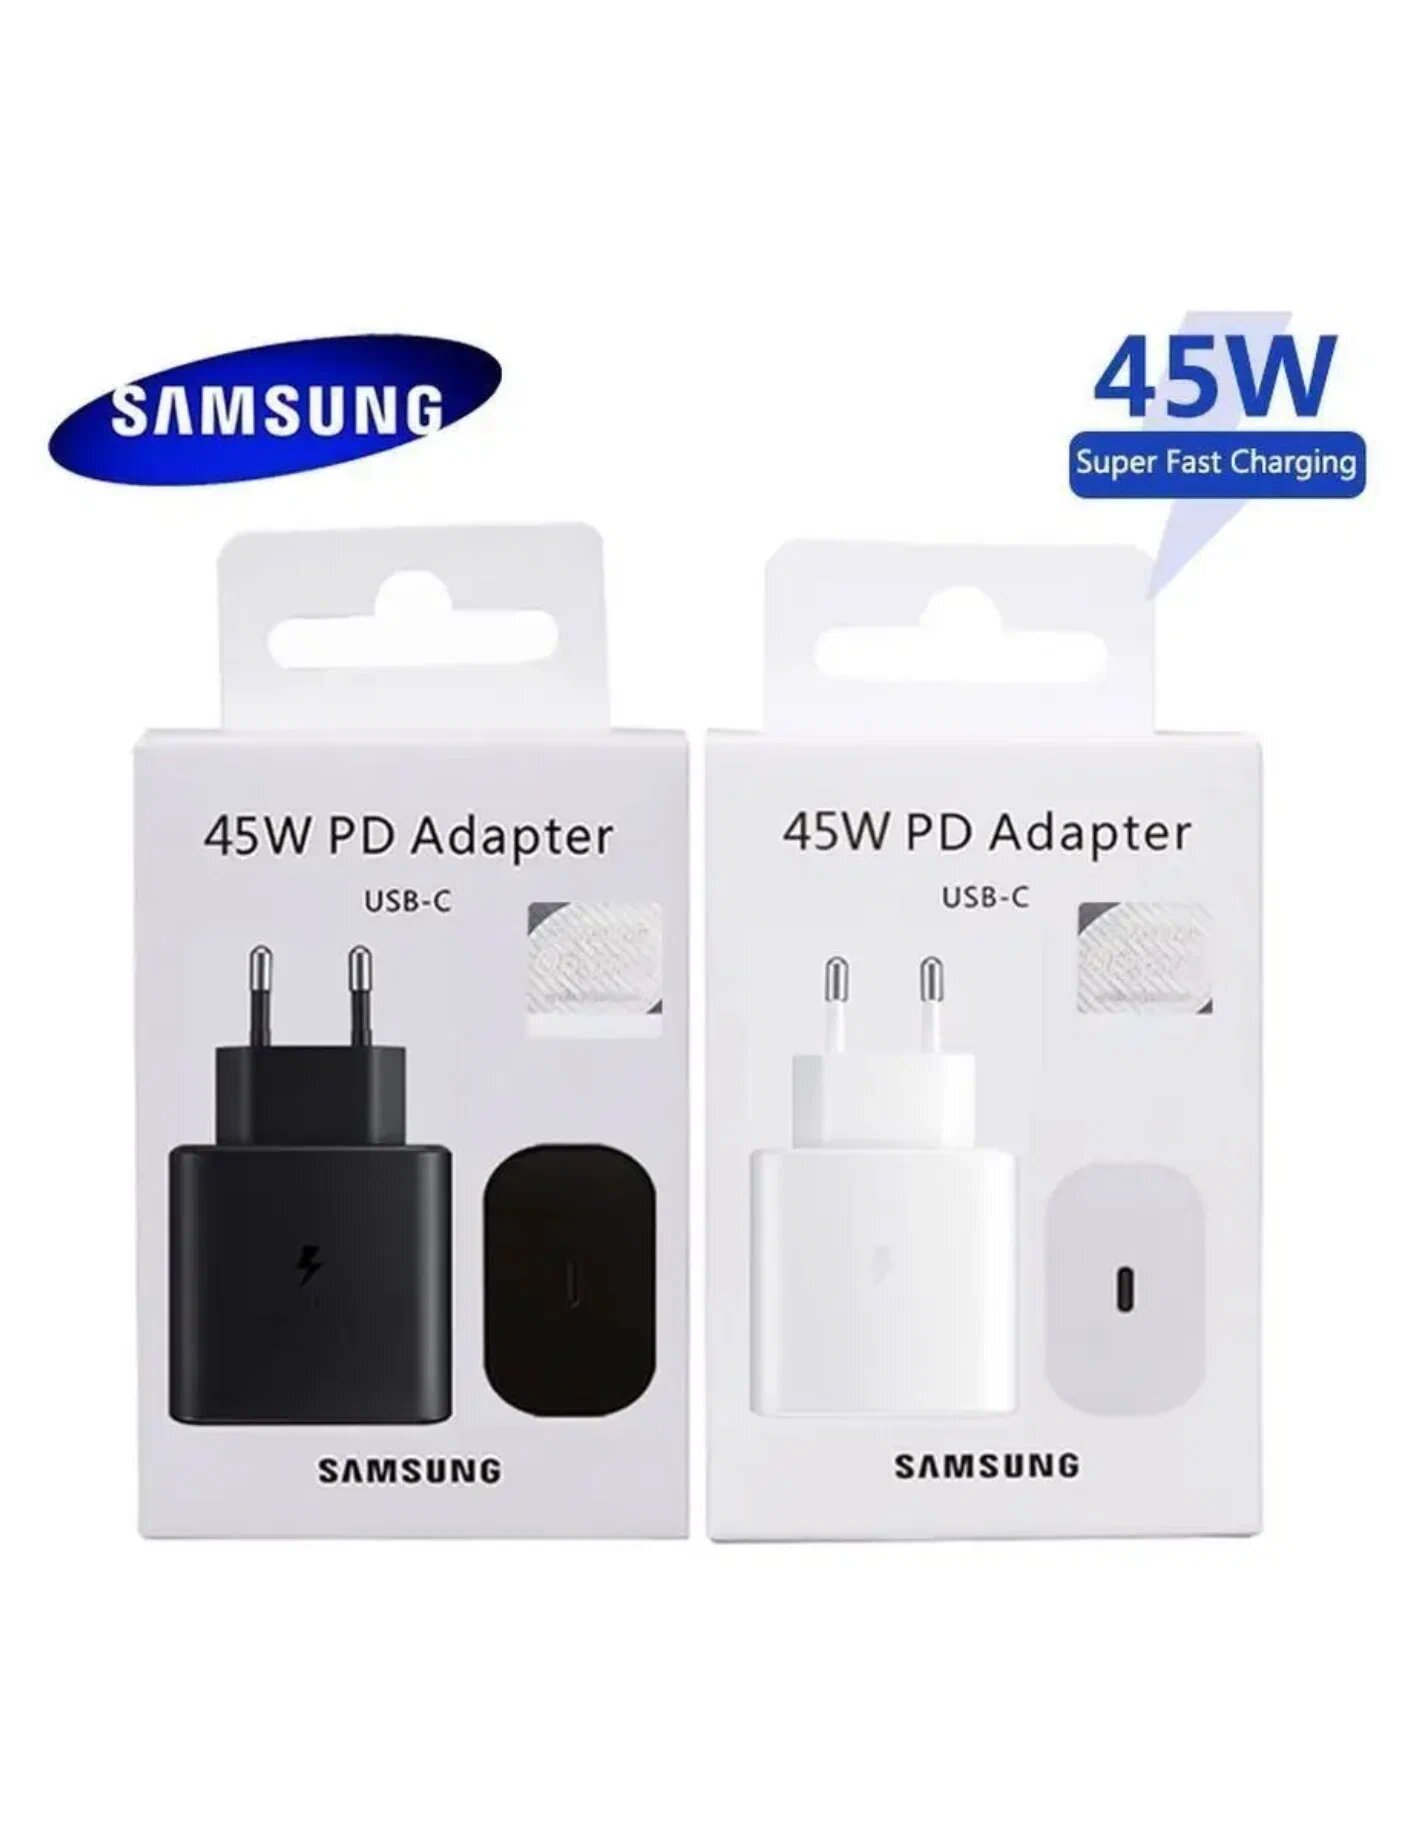 СЗУ Samsung Оригинал Super Fast Charge 45W 3A USB-C (EP-TA845XBEG) Black (Чёрный) без кабеля